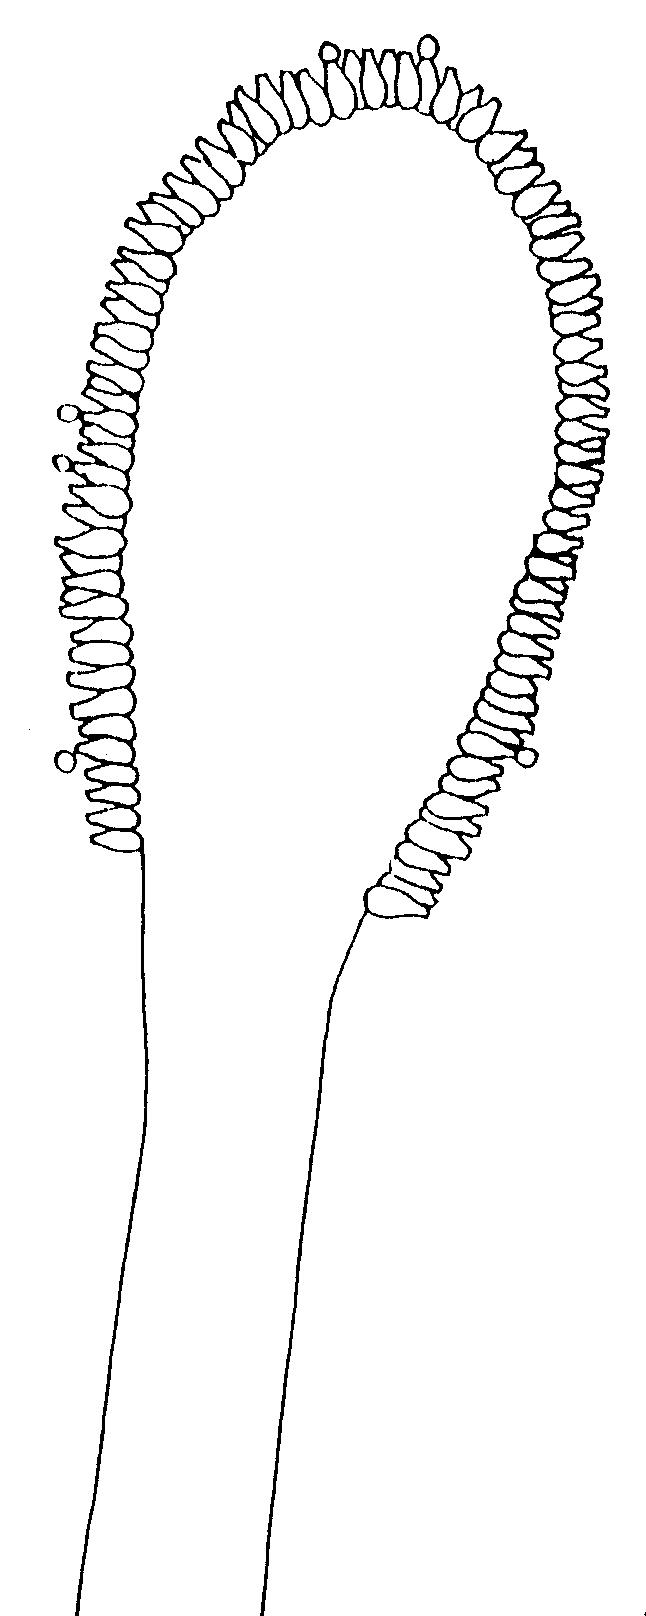 Cleistotecios amarillo en desarrollo, especialmente en Czapek-Glicerol 101, sembrar